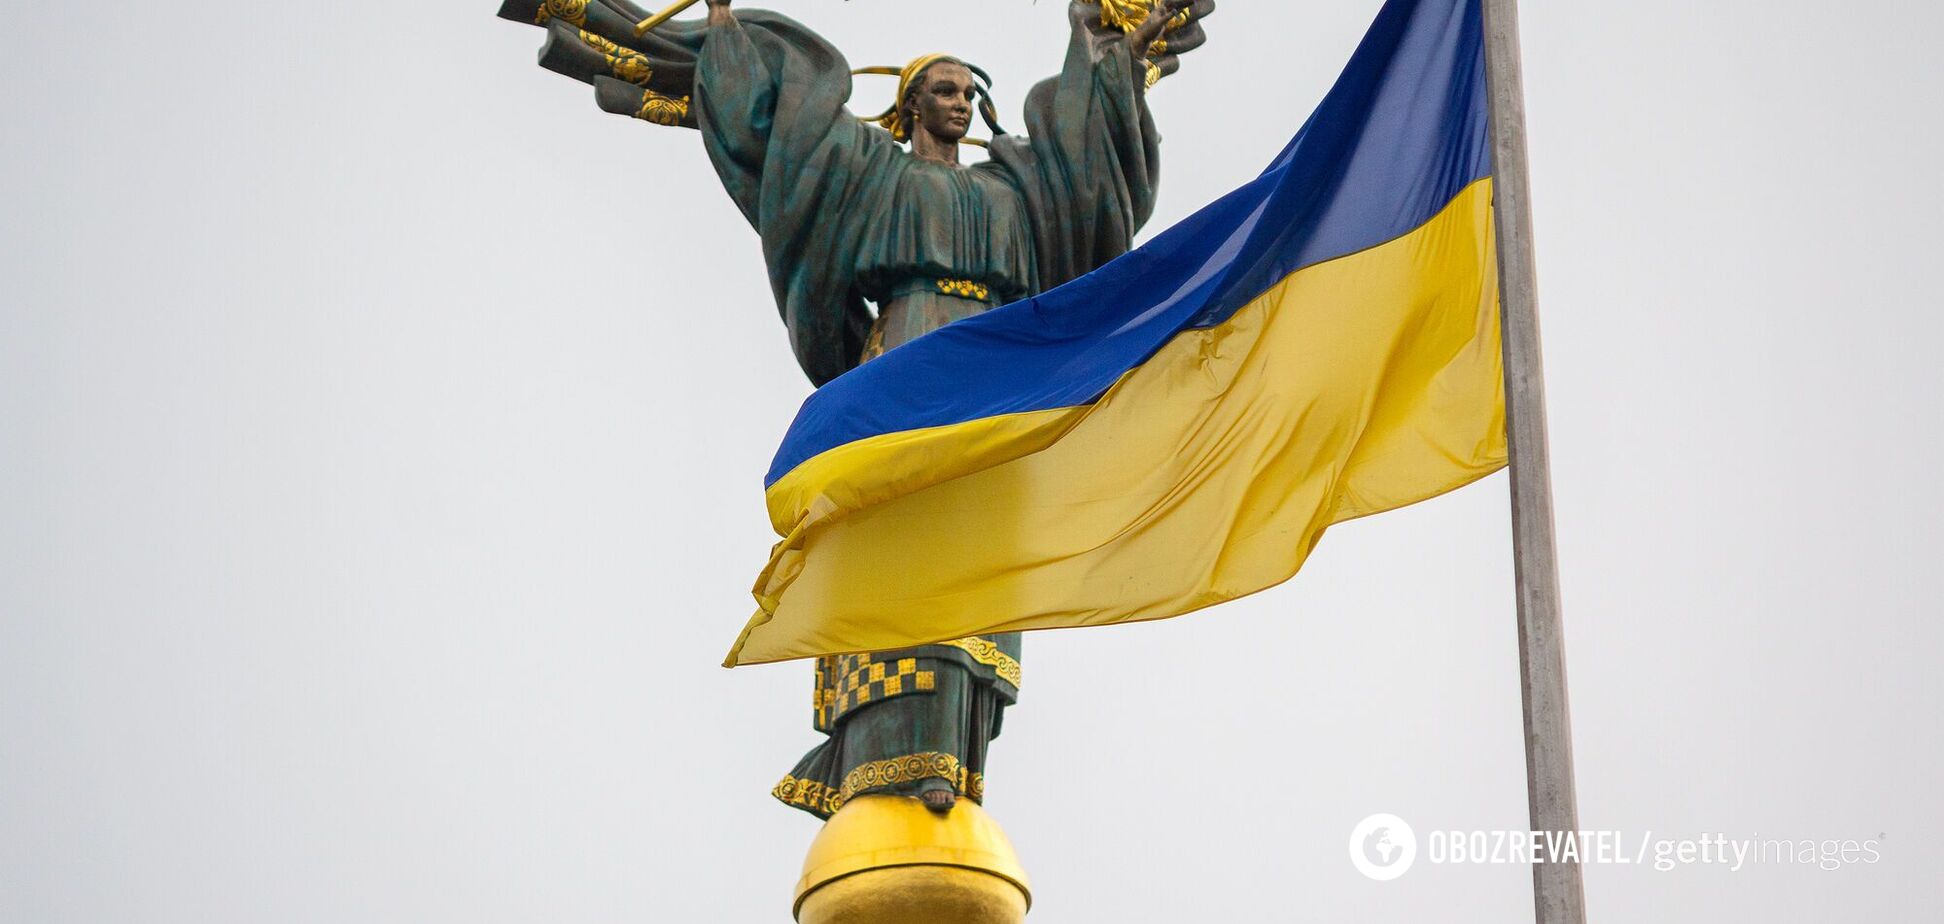 'Ще не вмерла України і Слава, і Воля'. За яких історичних подій було написано вірш